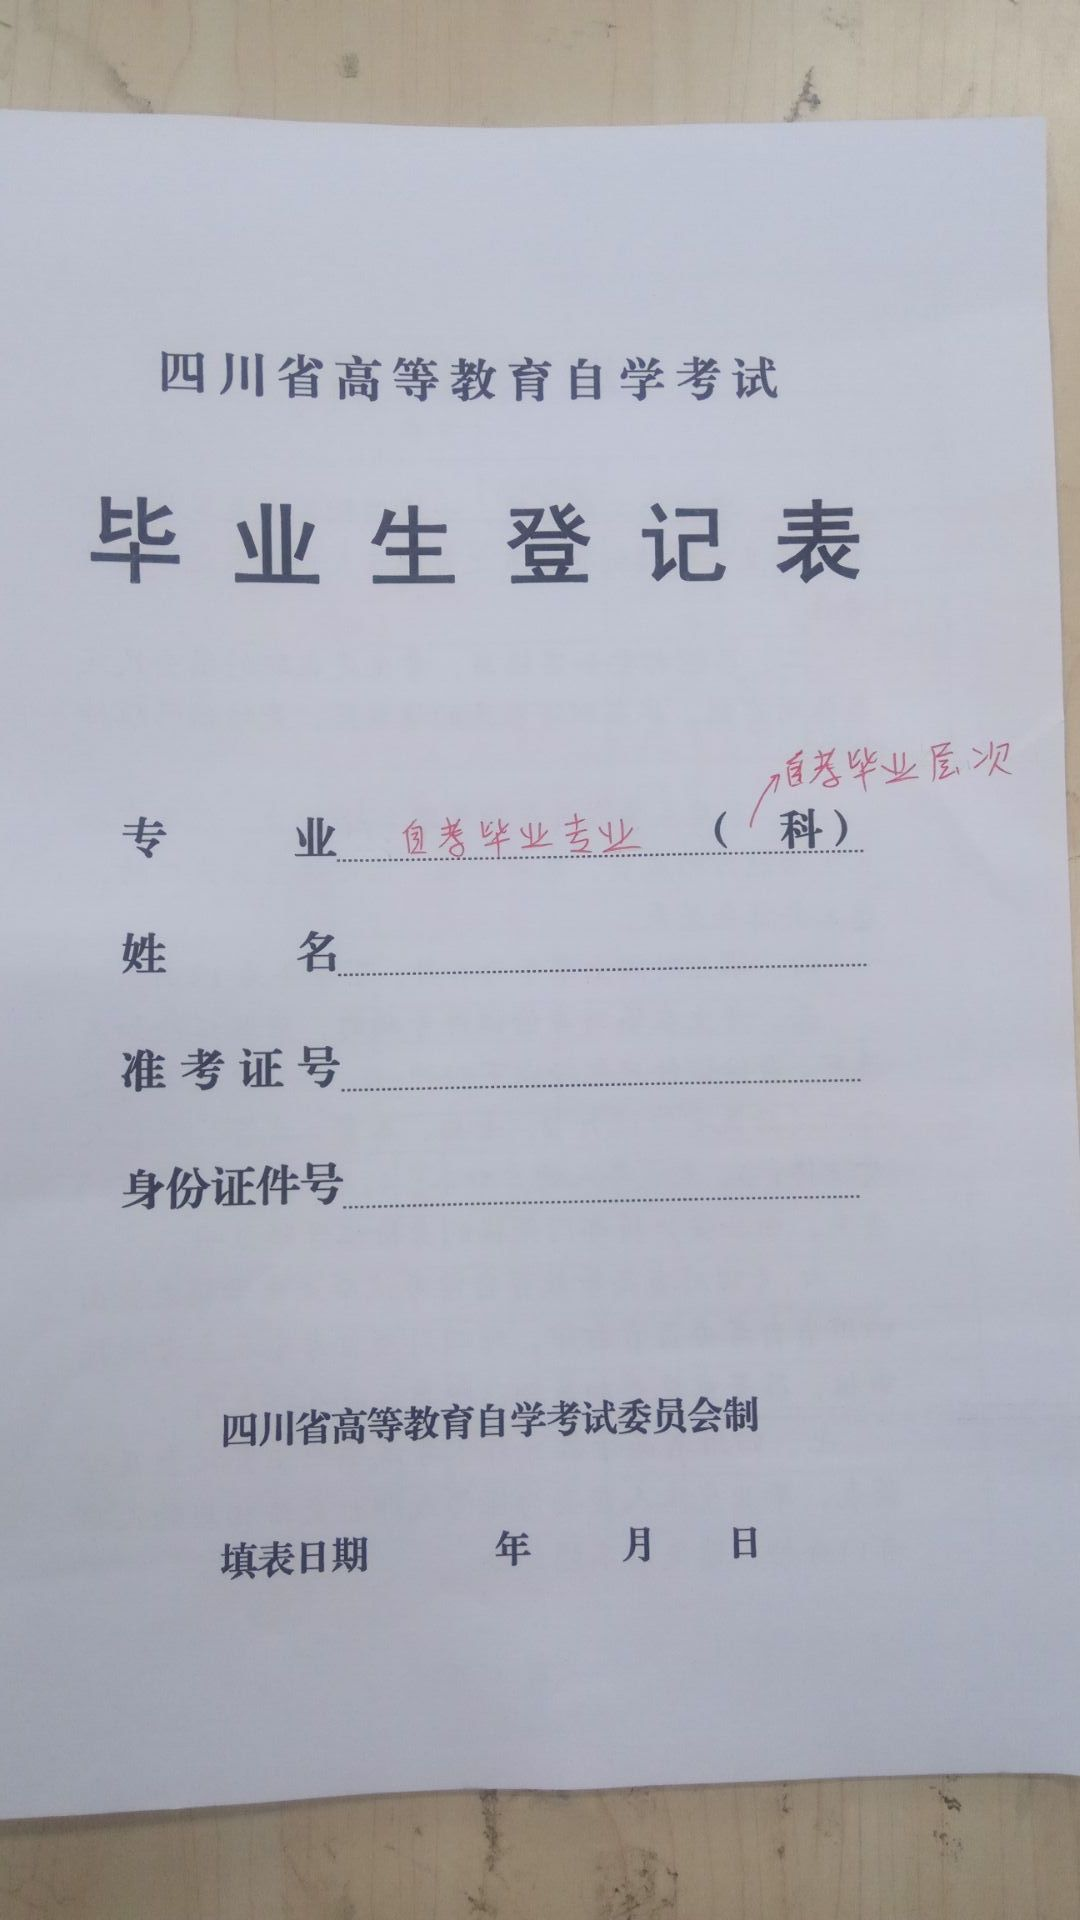 四川自考毕业生登记表填写模板填写指南(图)